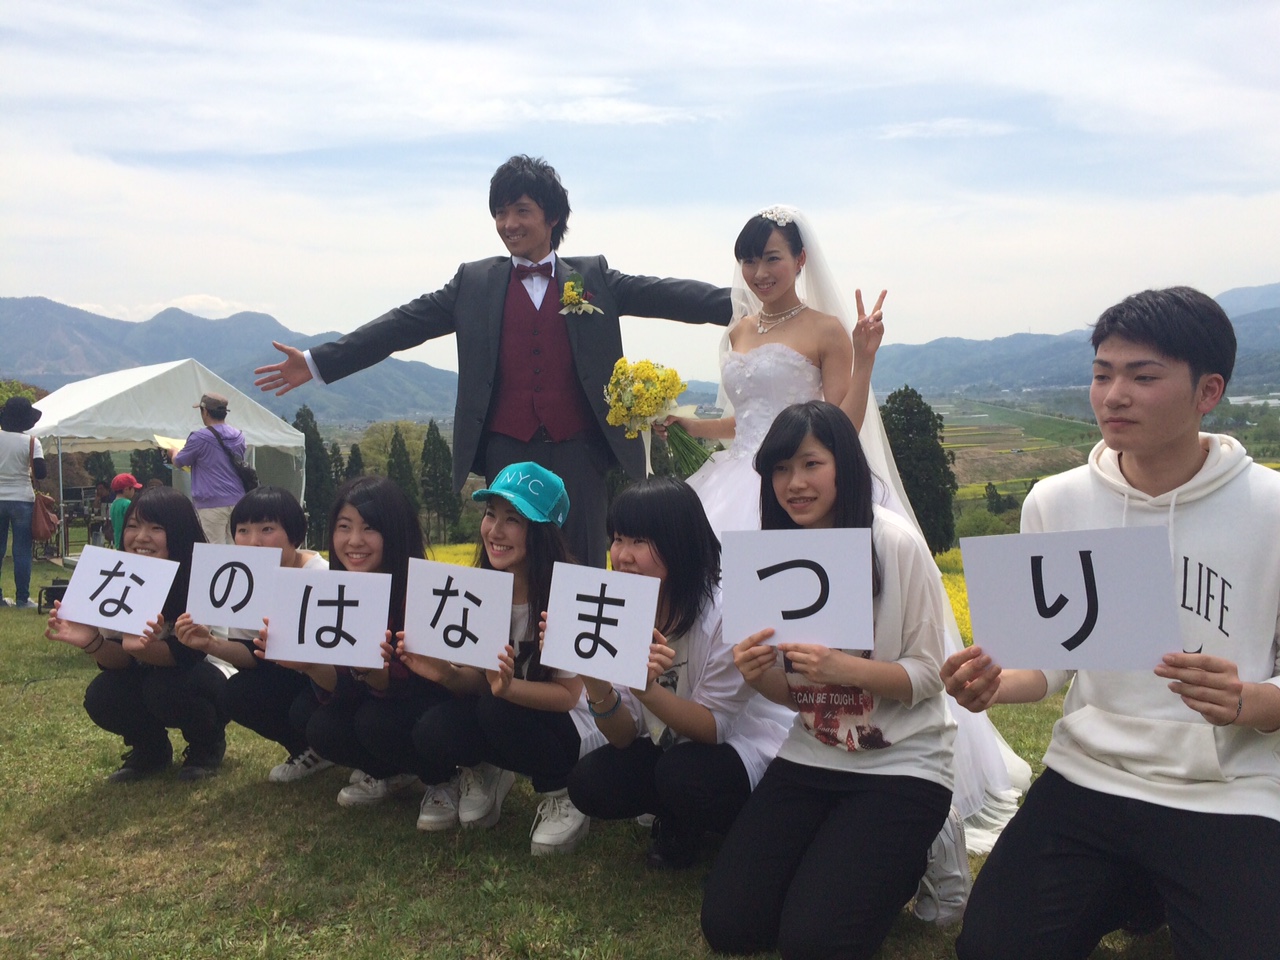 エシカルな結婚式プロデュース～ecomaco、長野県と提携